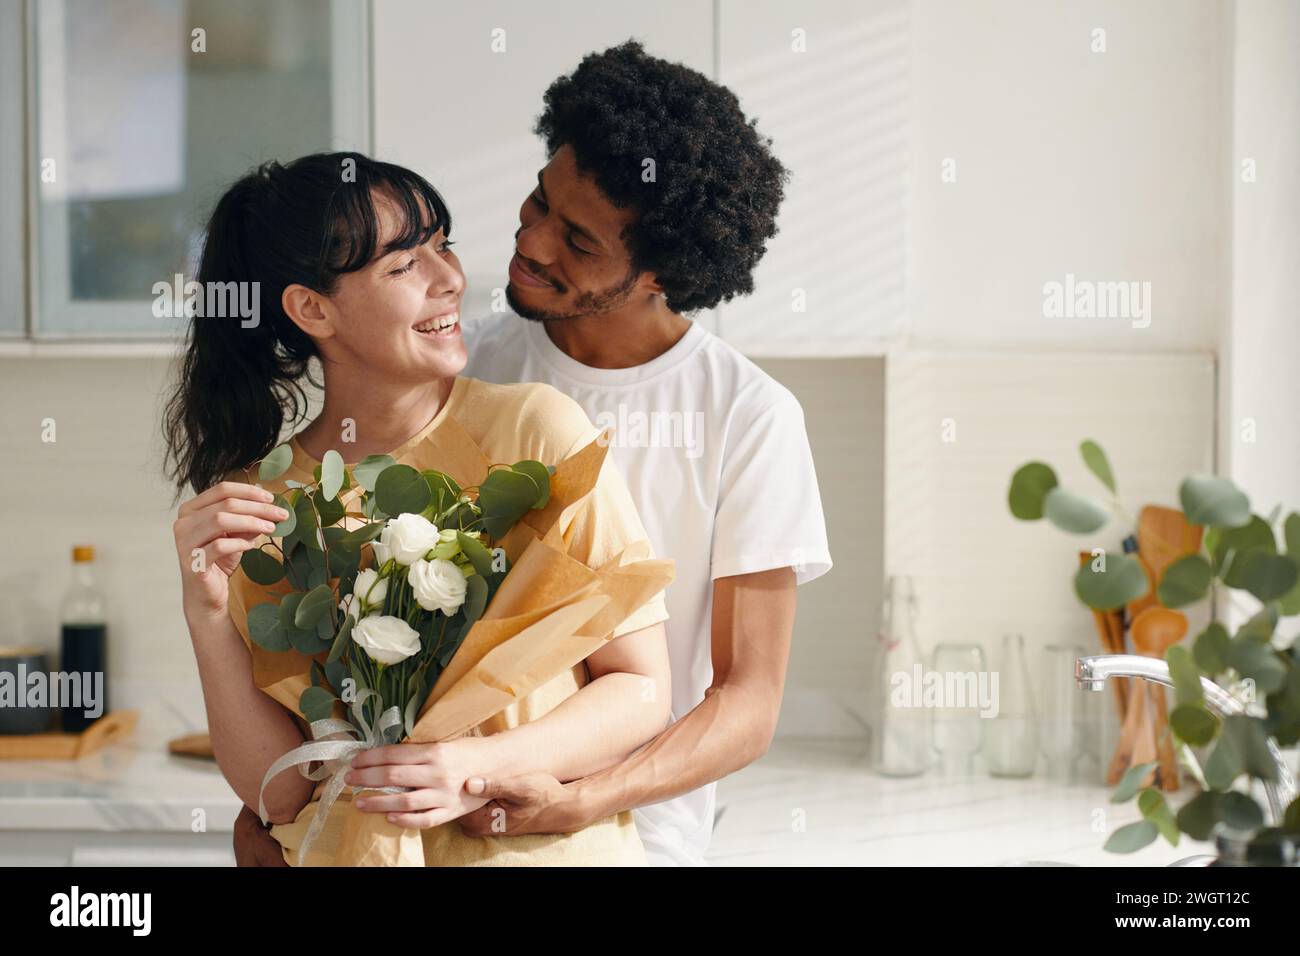 Ein junges, liebevolles Paar in Casualwear, das sich ansieht, während der Kerl seine Freundin umschließt, die einen Haufen weißer Blumen hält Stockfoto